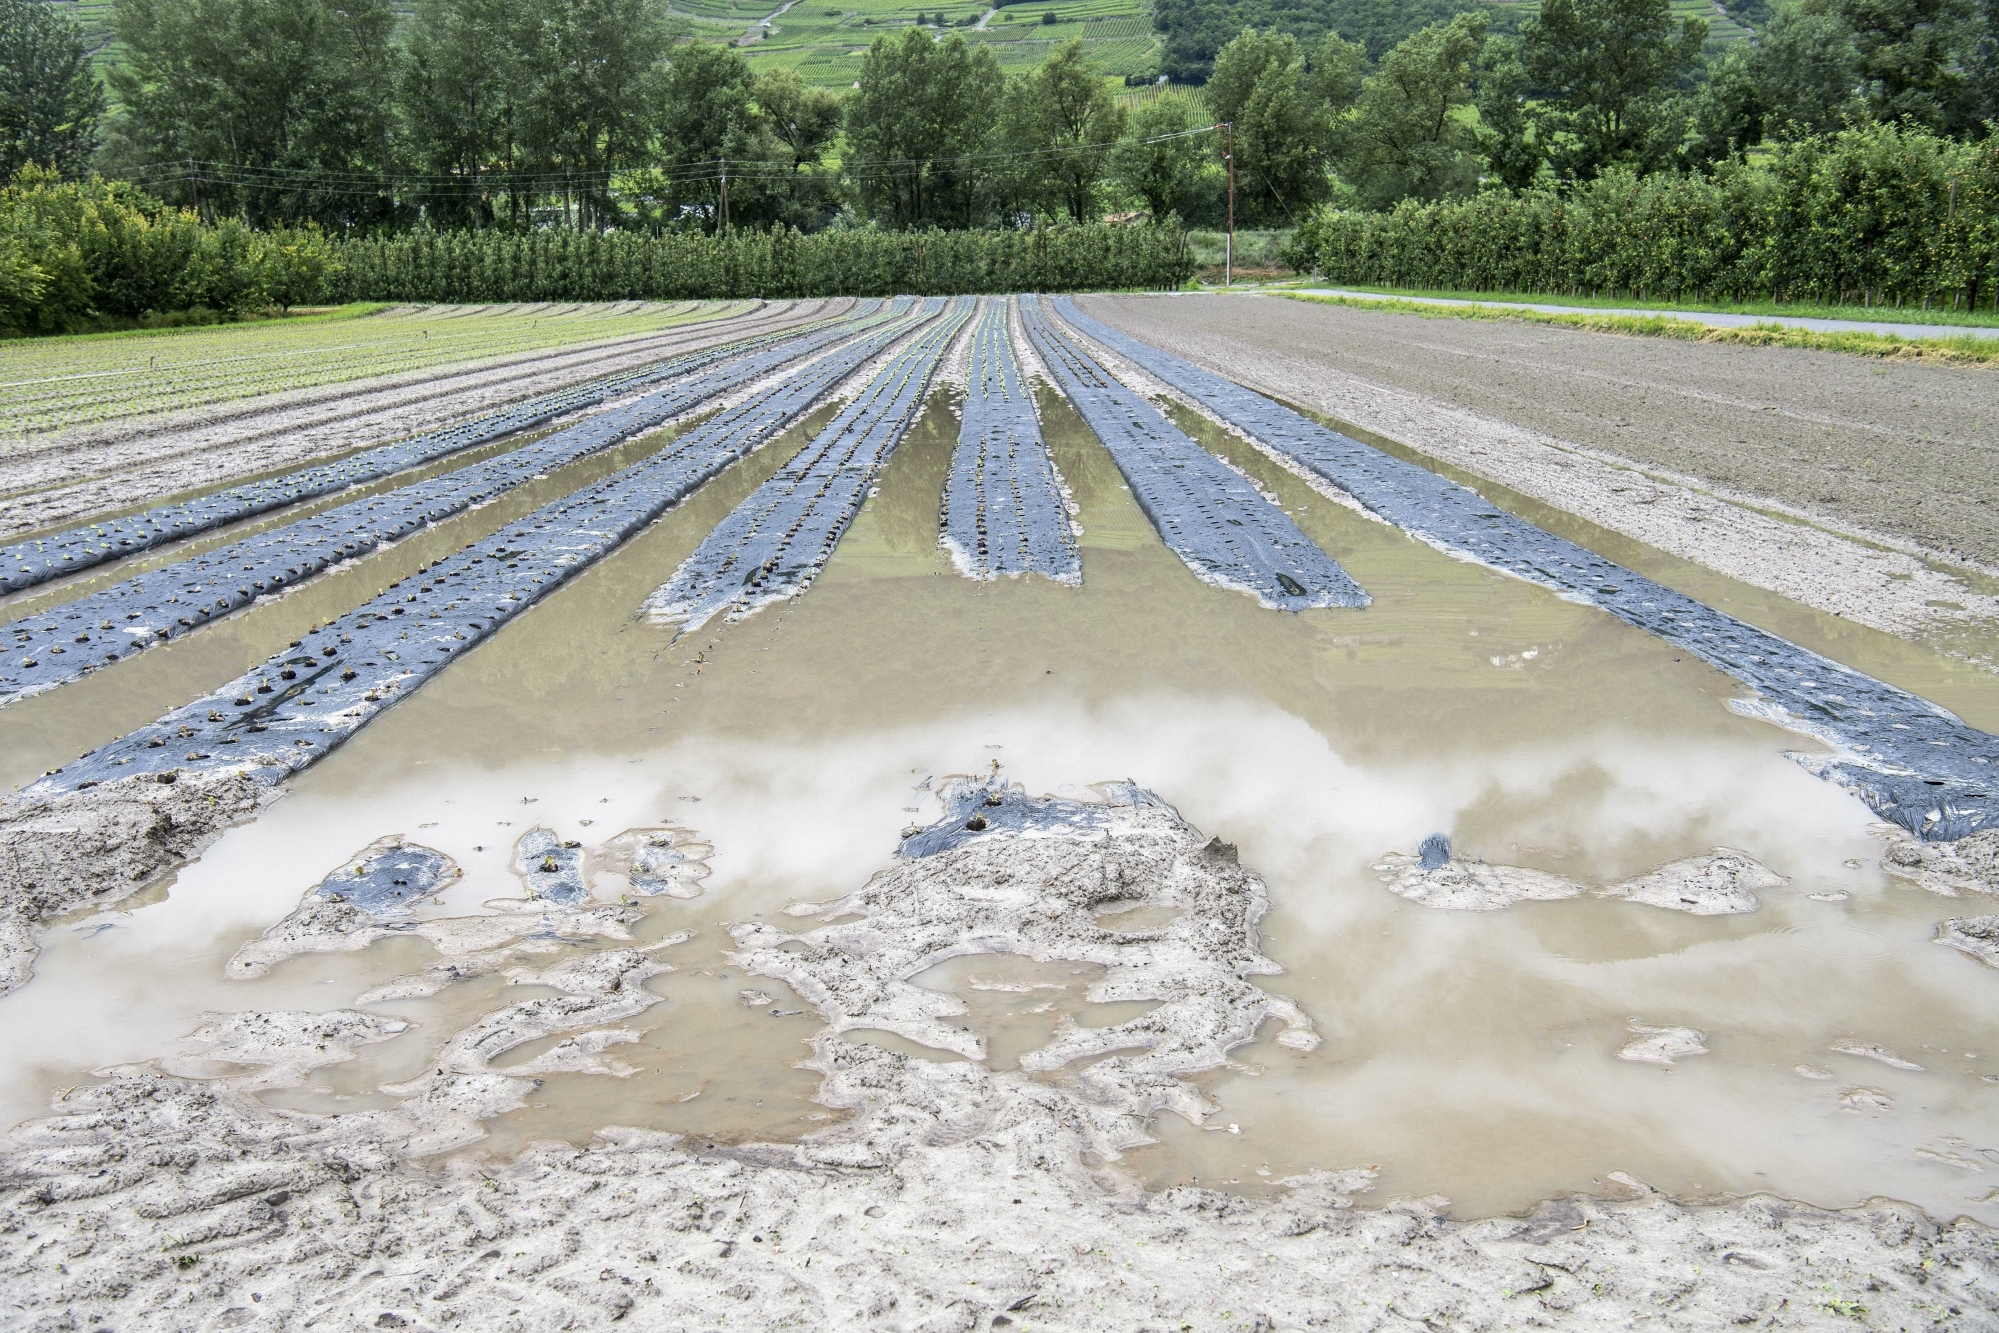 Les récoltes sont rendues très difficiles dans des sols gorgés d’eau, Comme ici dans la plaine du Rhône près de Fully.